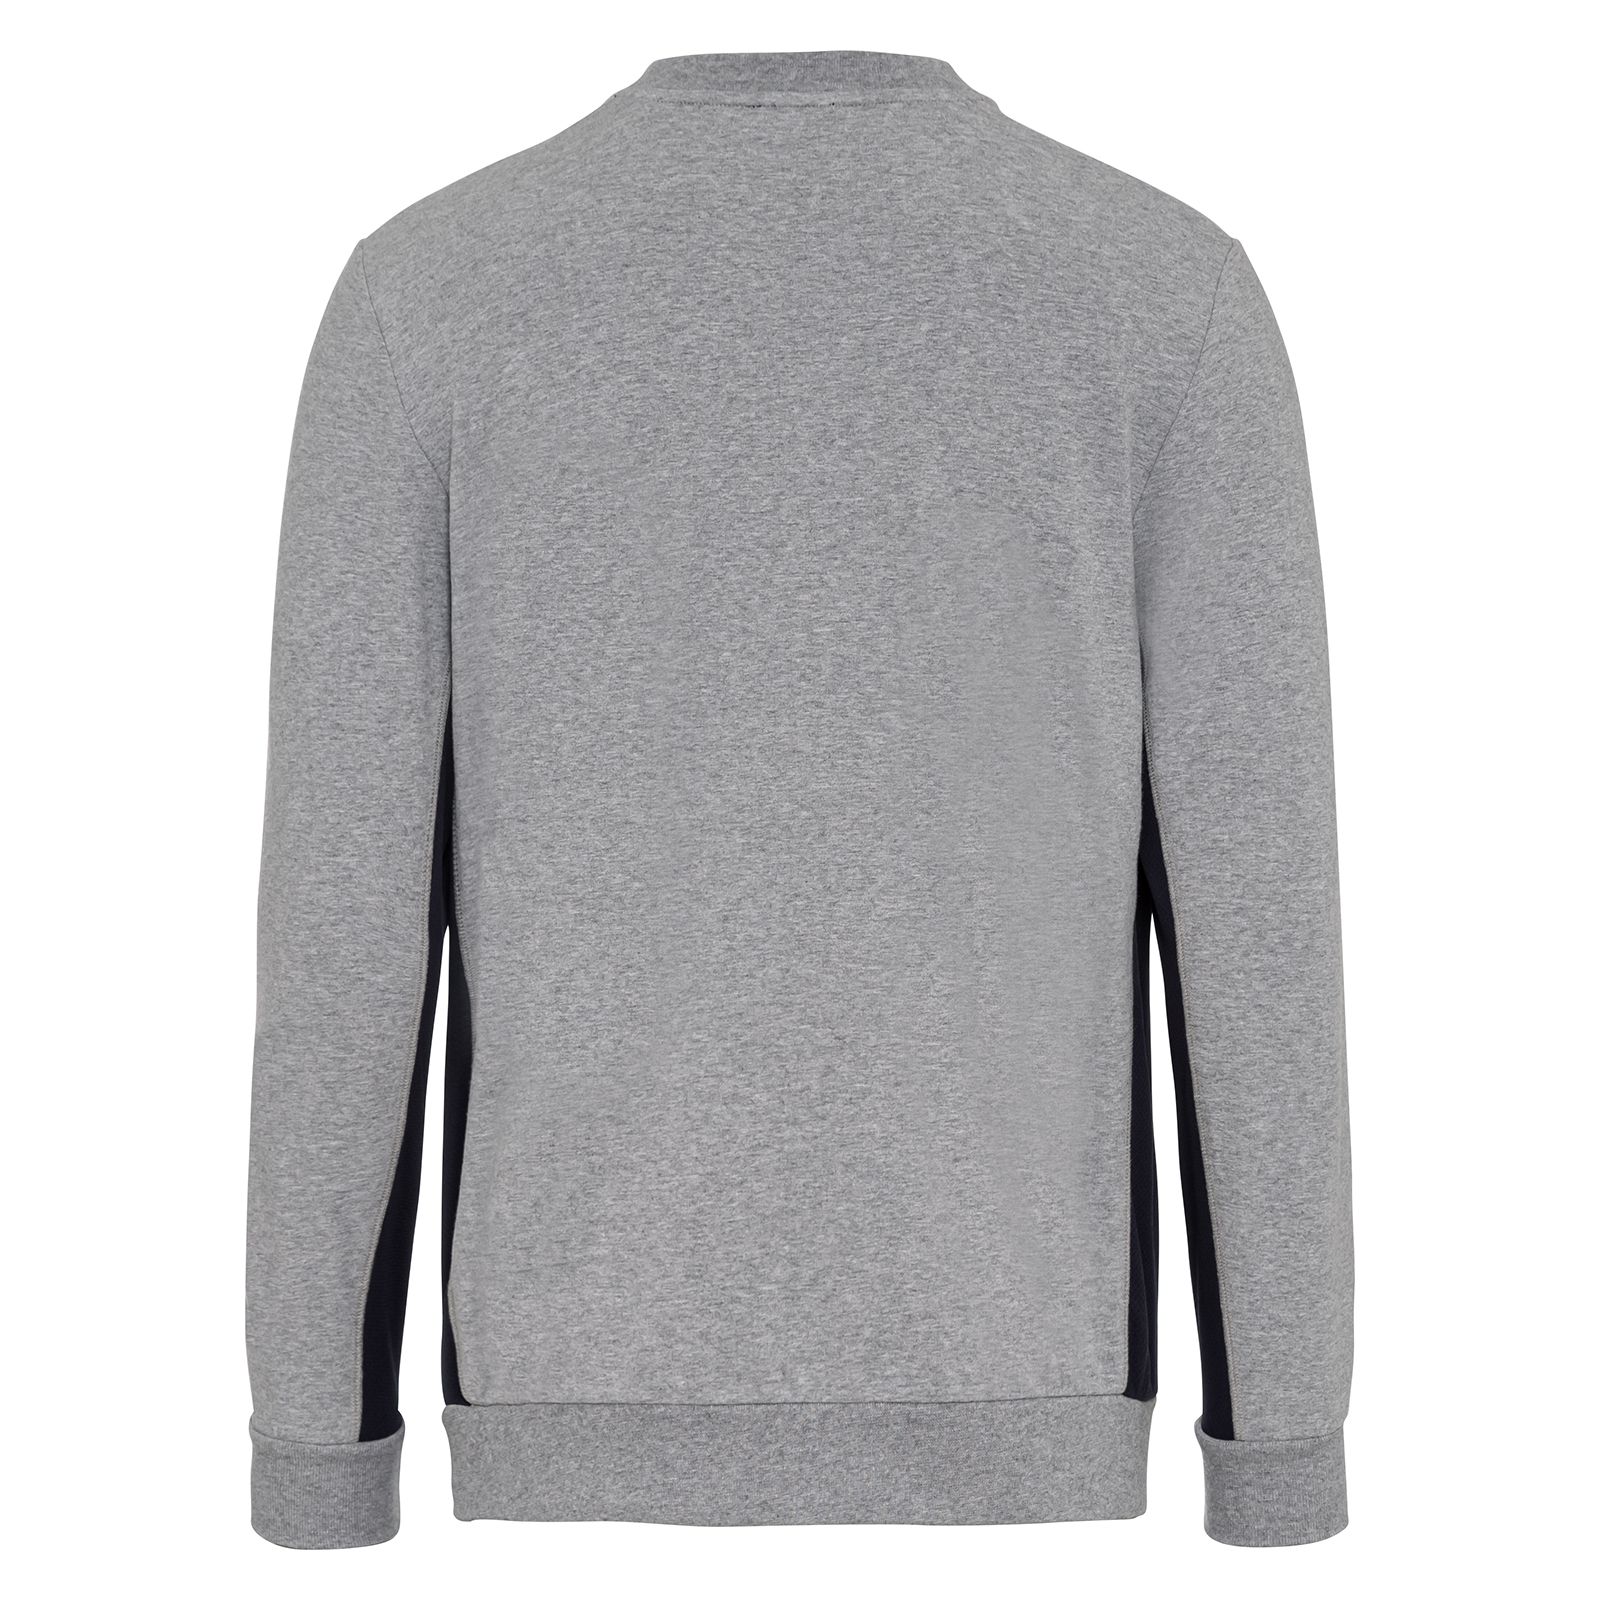 Superzachte golfsweater voor heren met ademende mesh-inzetstukken